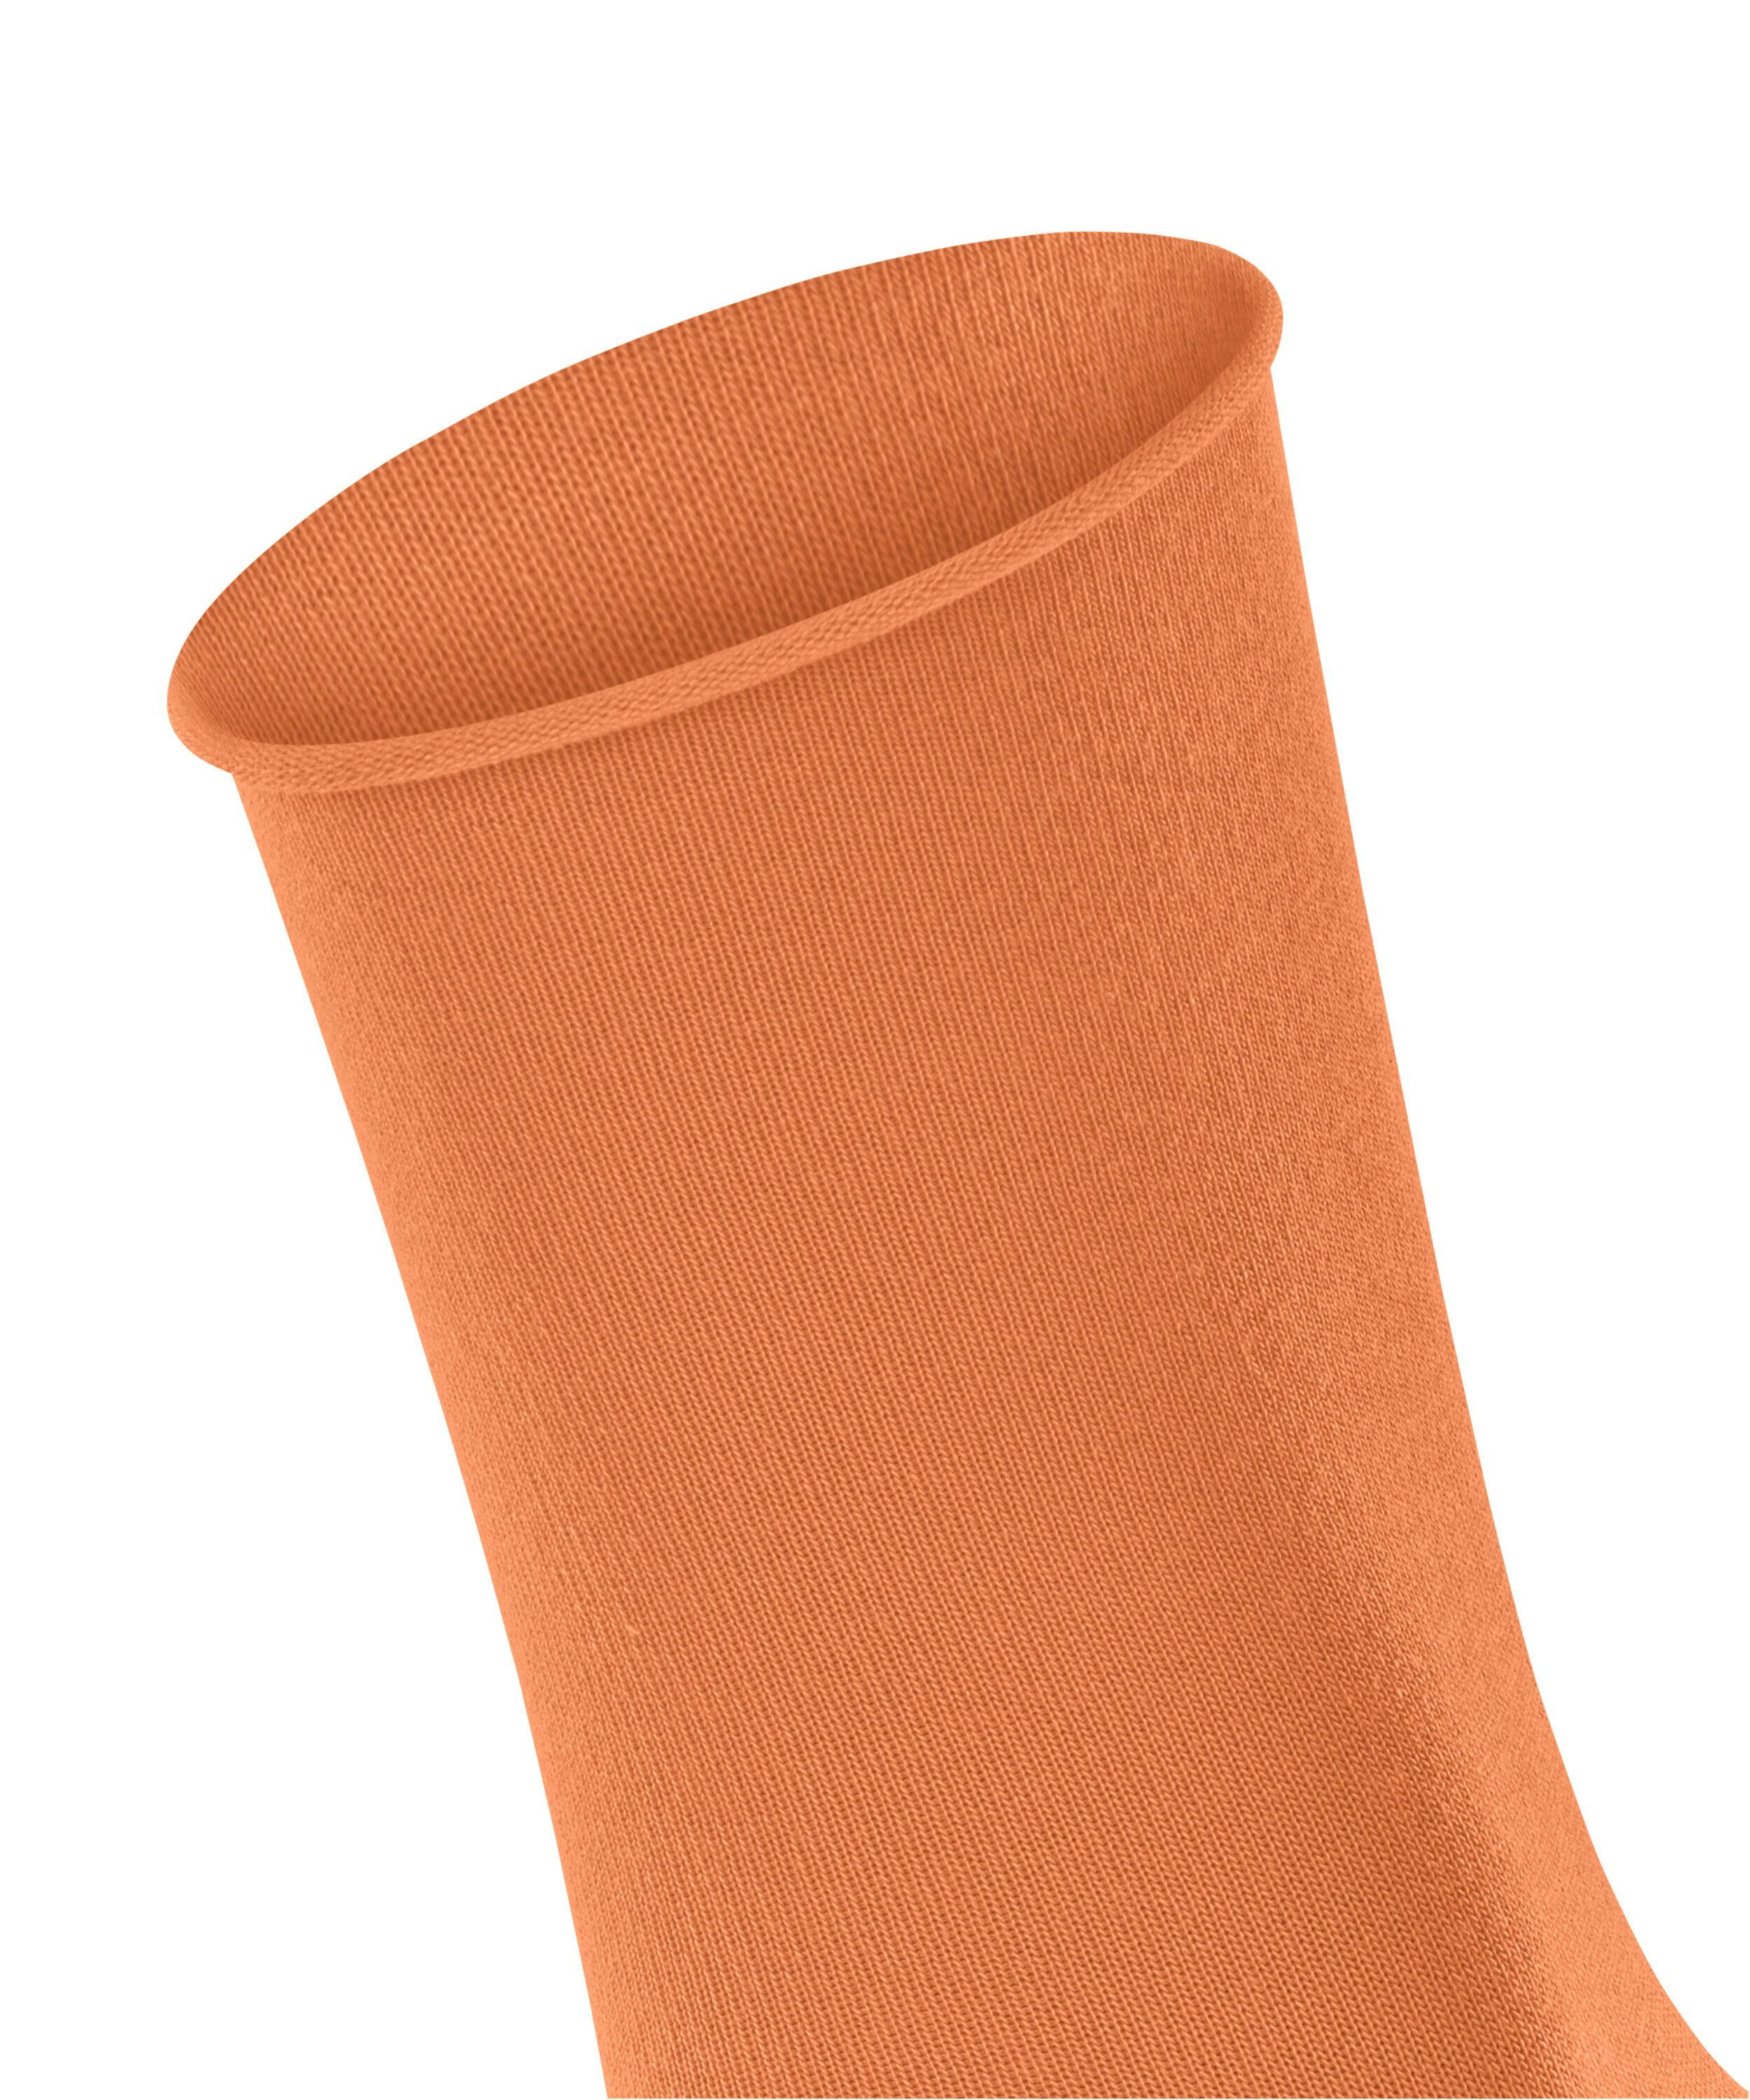 Breeze Active FALKE (8576) tandoori (1-Paar) Socken